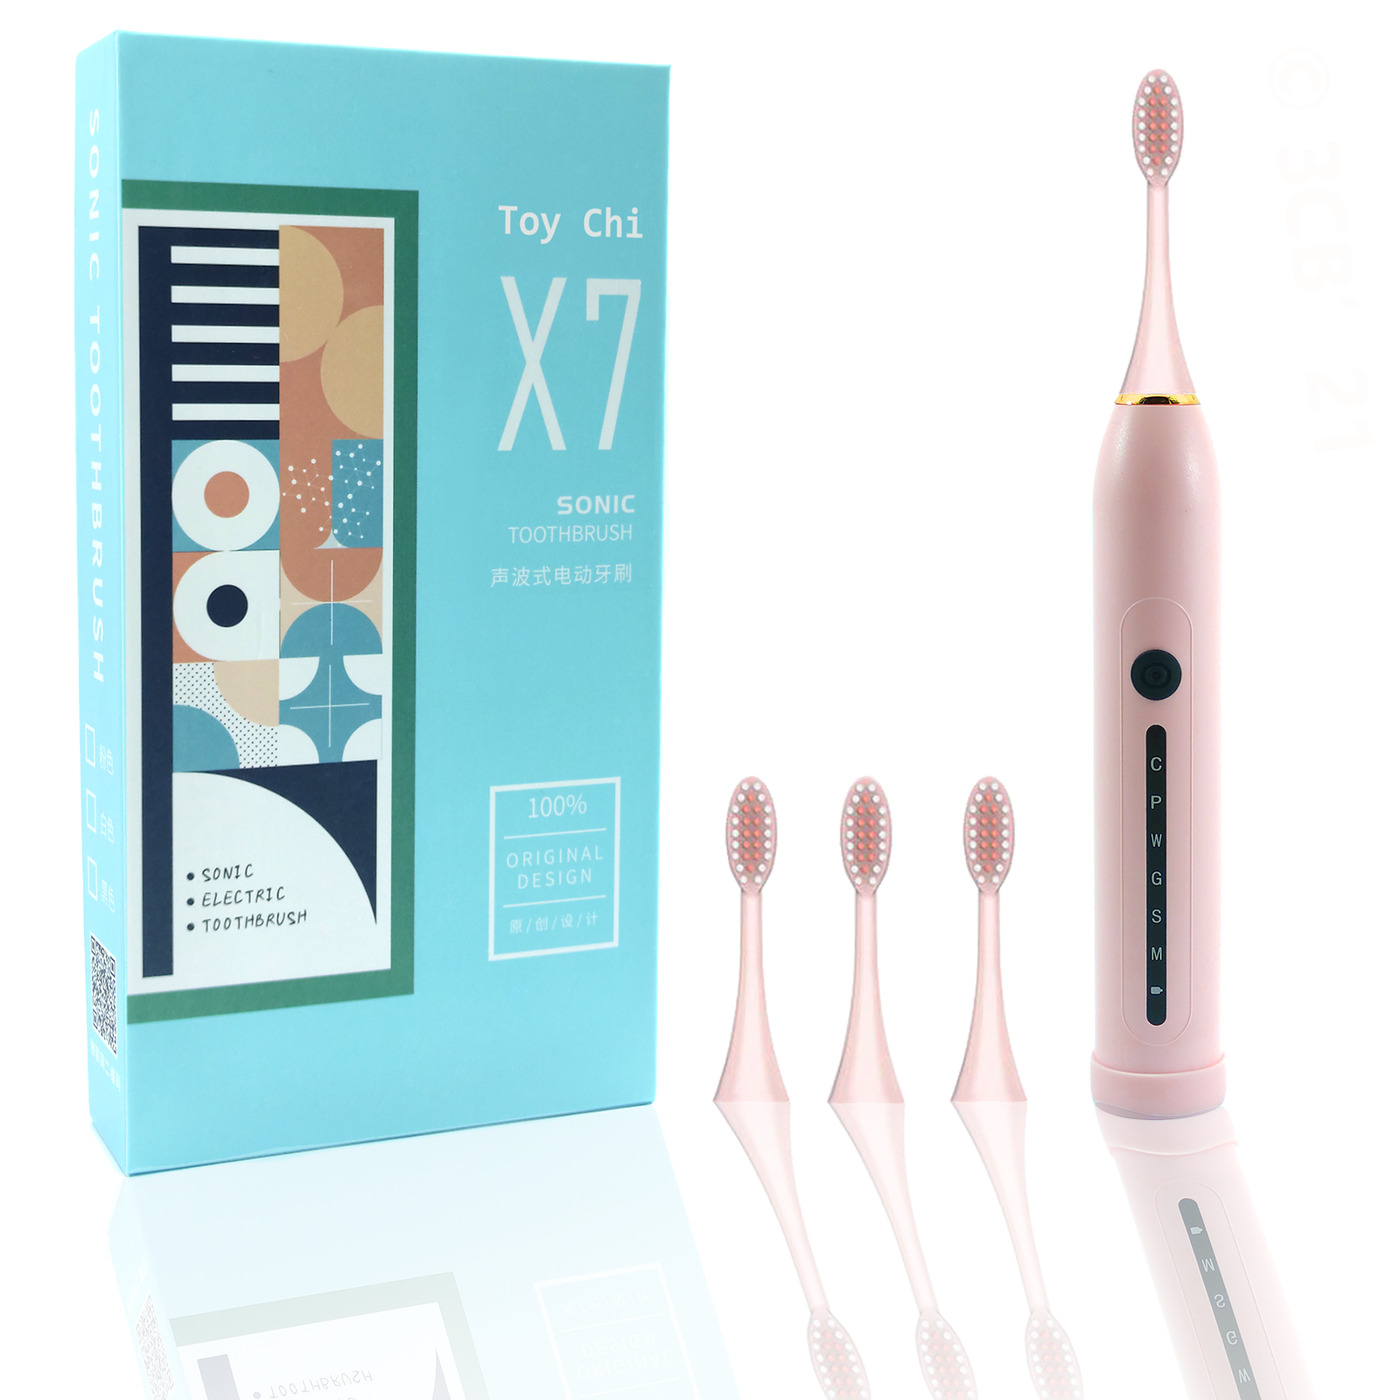 Электрическая зубная щетка ультразвуковая Toy Chi X7 SONIC Toothbrush, розовая электрическая зубная щетка ультразвуковая toy chi x7 sonic toothbrush черная